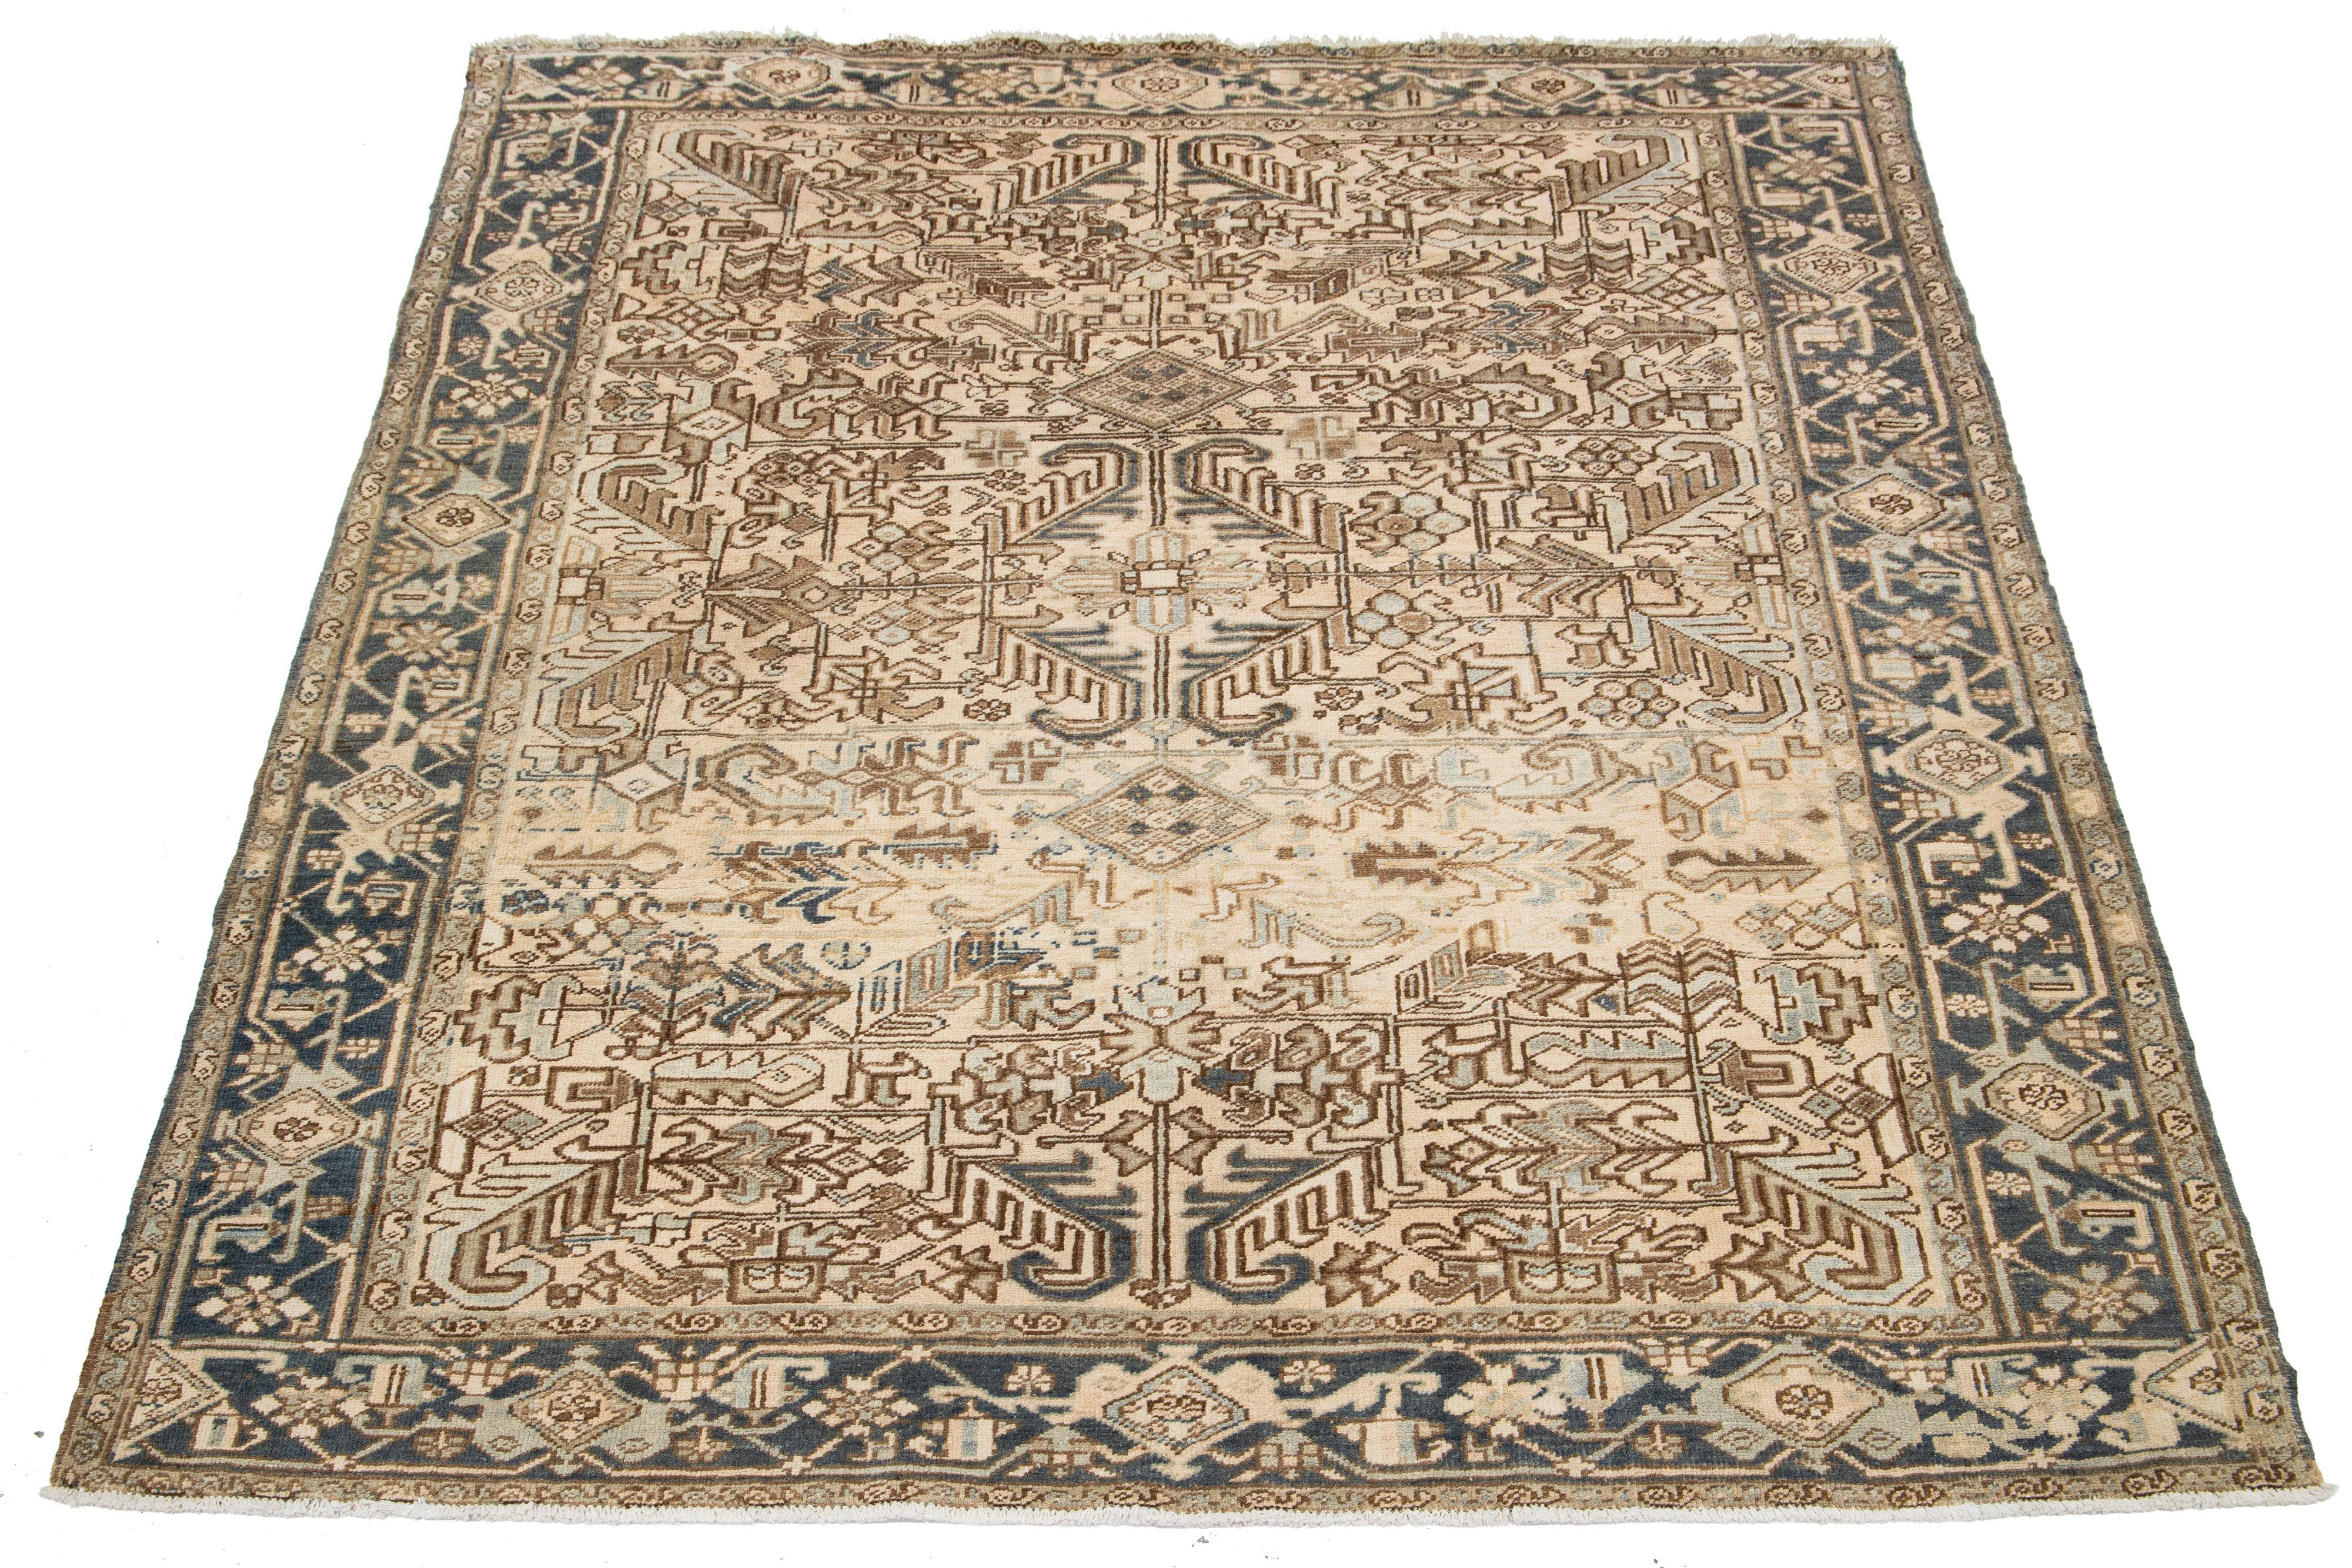 Un ancien tapis persan en laine Heriz noué à la main présente un motif bleu et marron sur fond beige.

Ce tapis mesure 7'6'' x 9'2